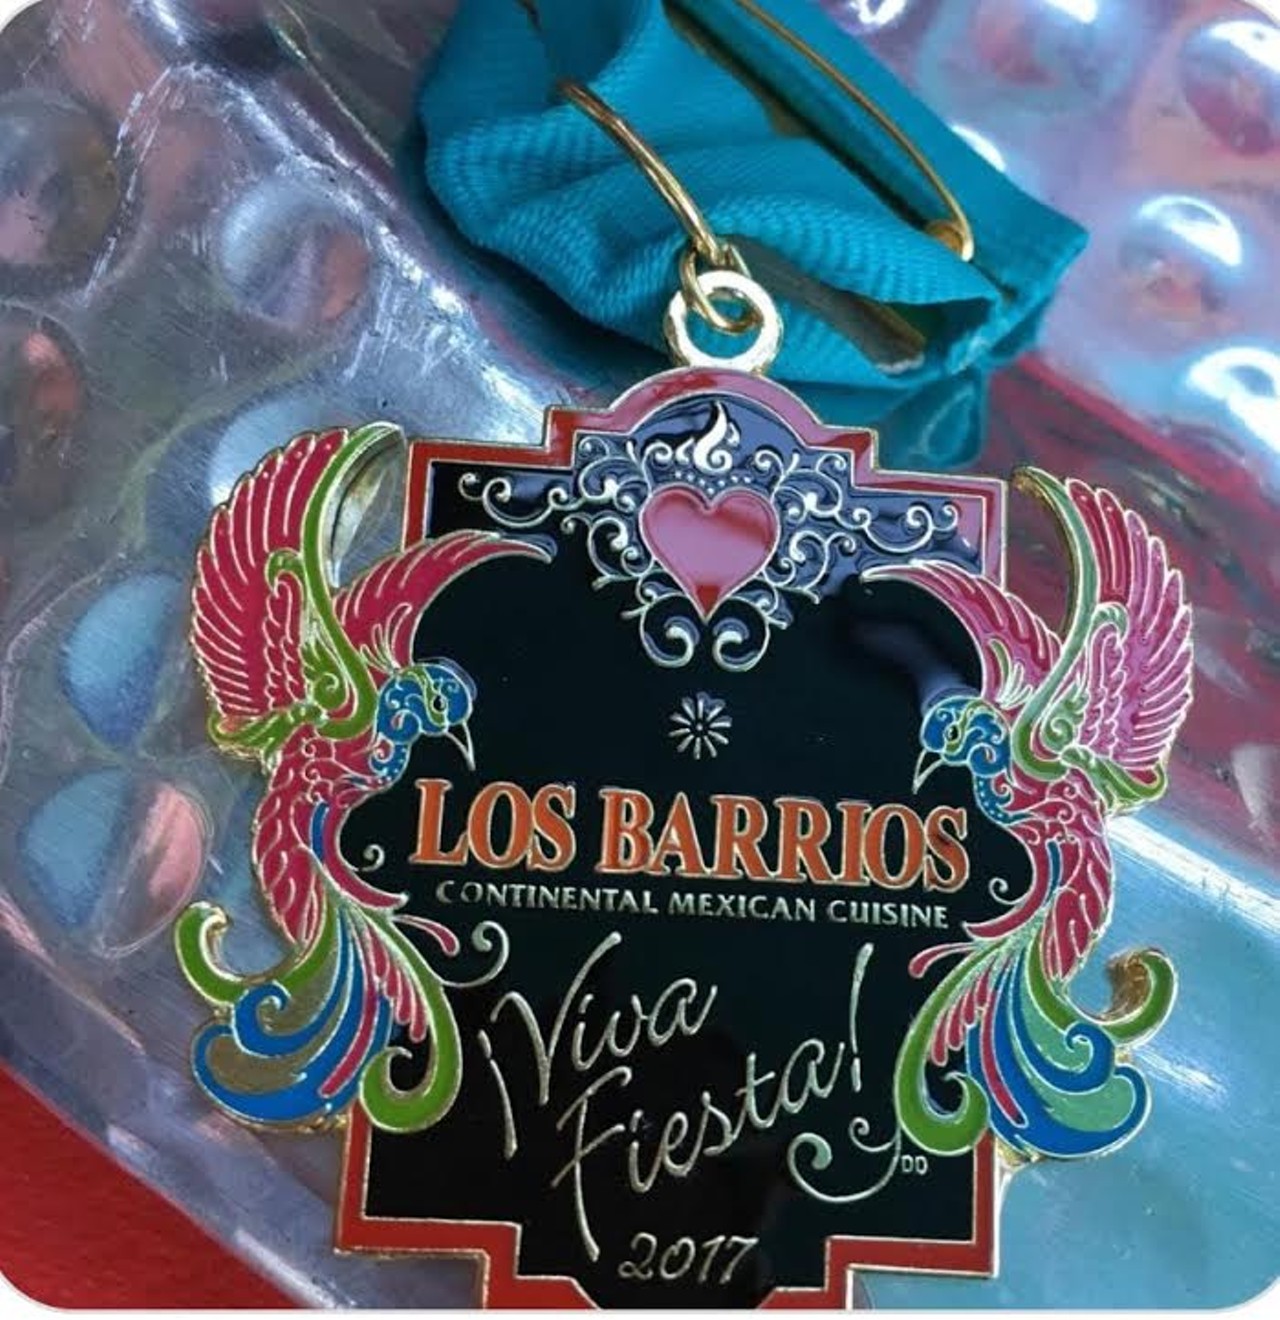 Los Barrios
$10
Sold at La Hacienda de Los Barrios
18747 Redland Rd
(210) 497-8000
lddlb.com